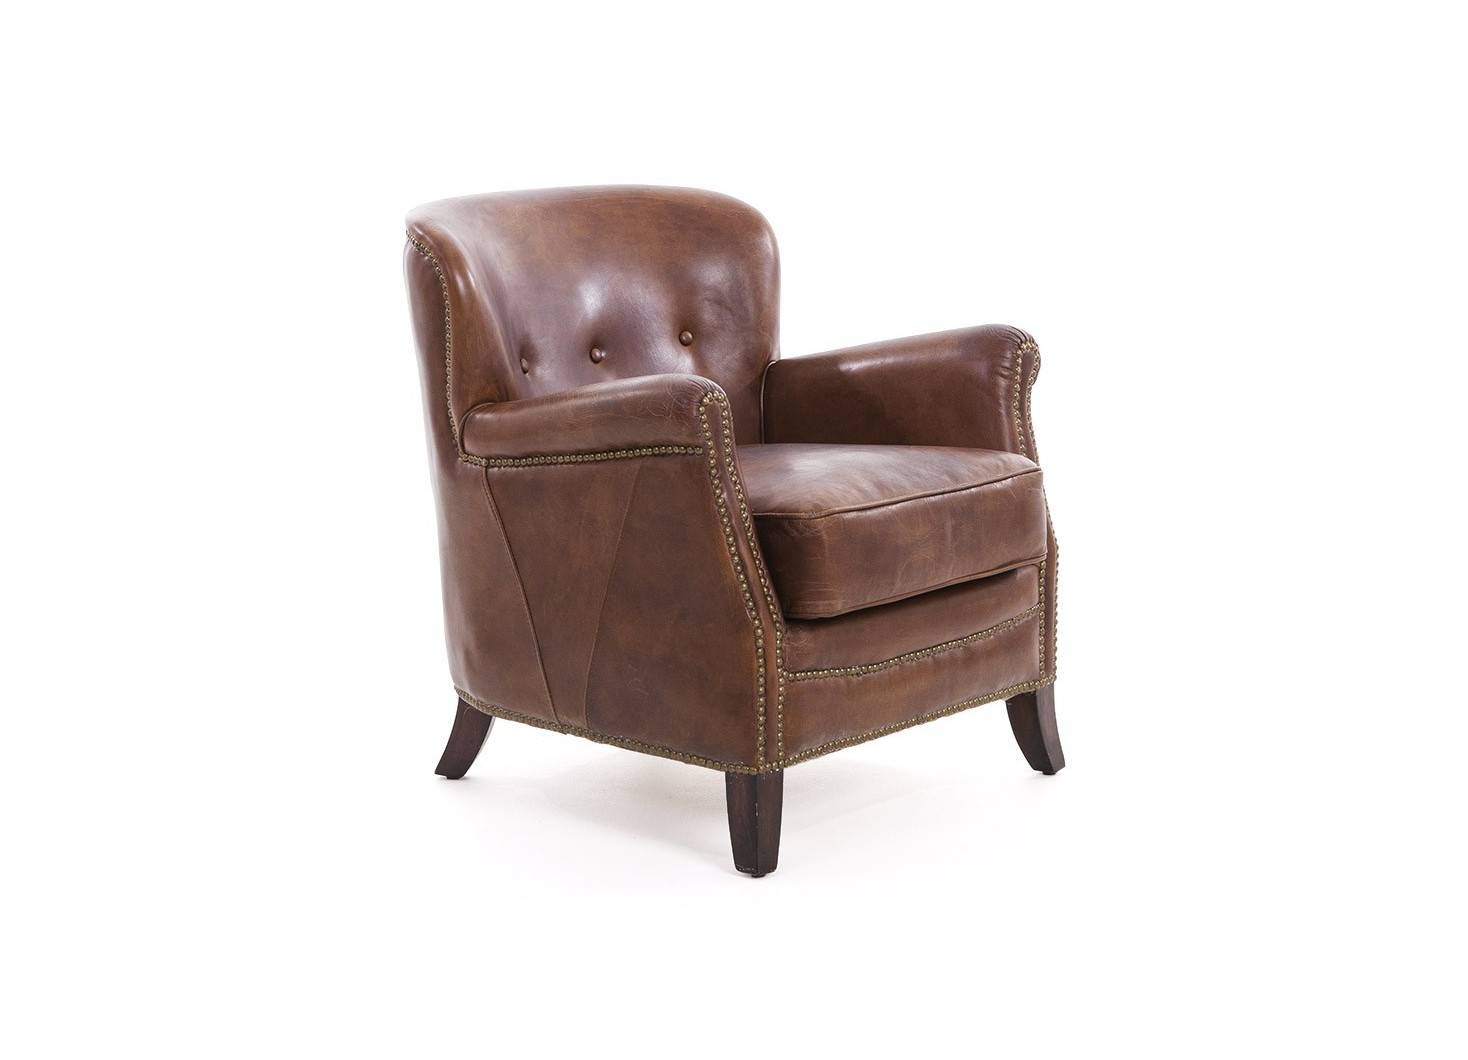 Hemingway Club armchair - brown leather 